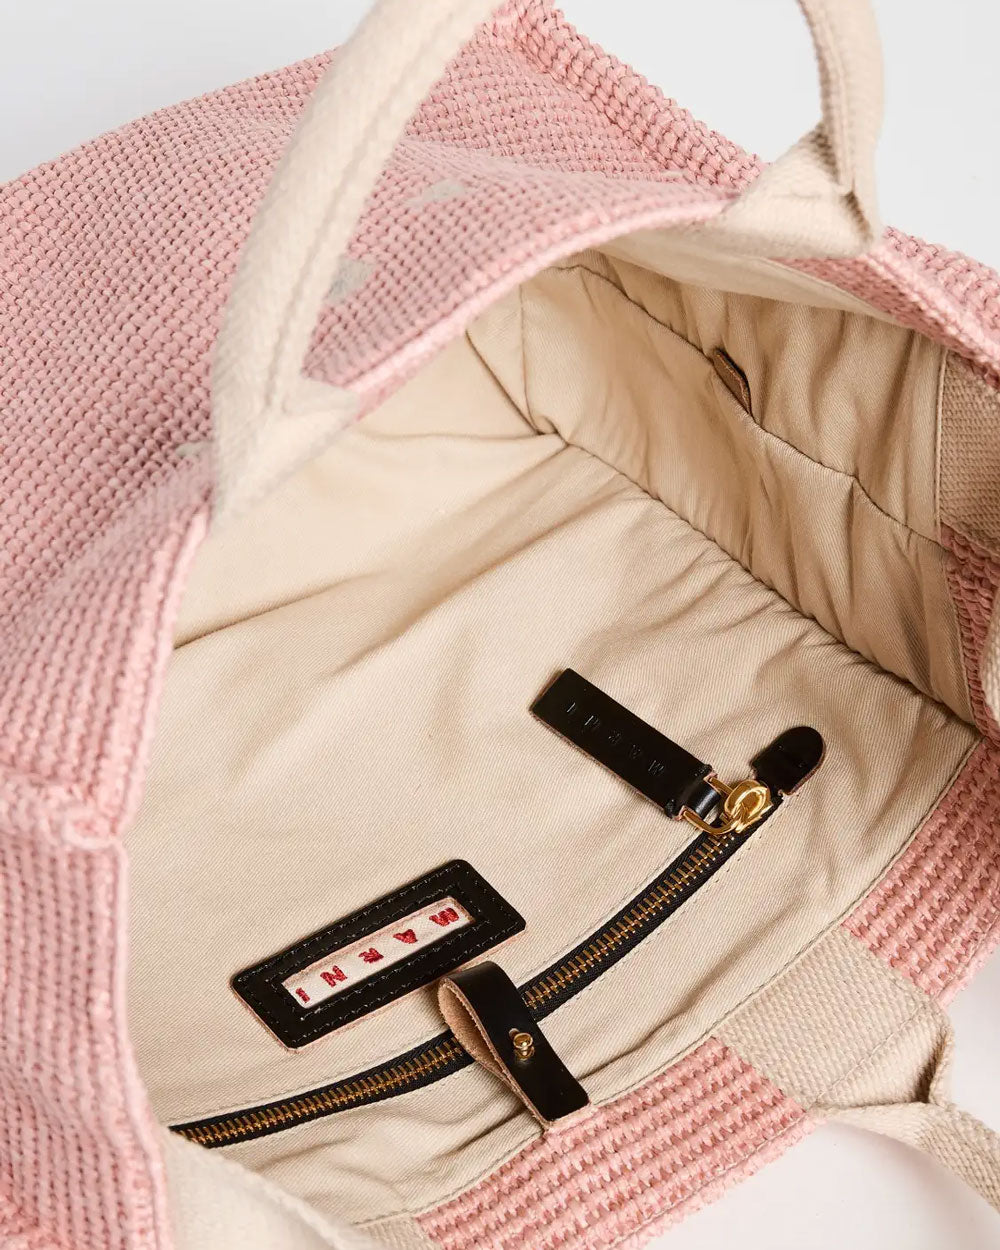 Small Raffia Tote Bag in Pink